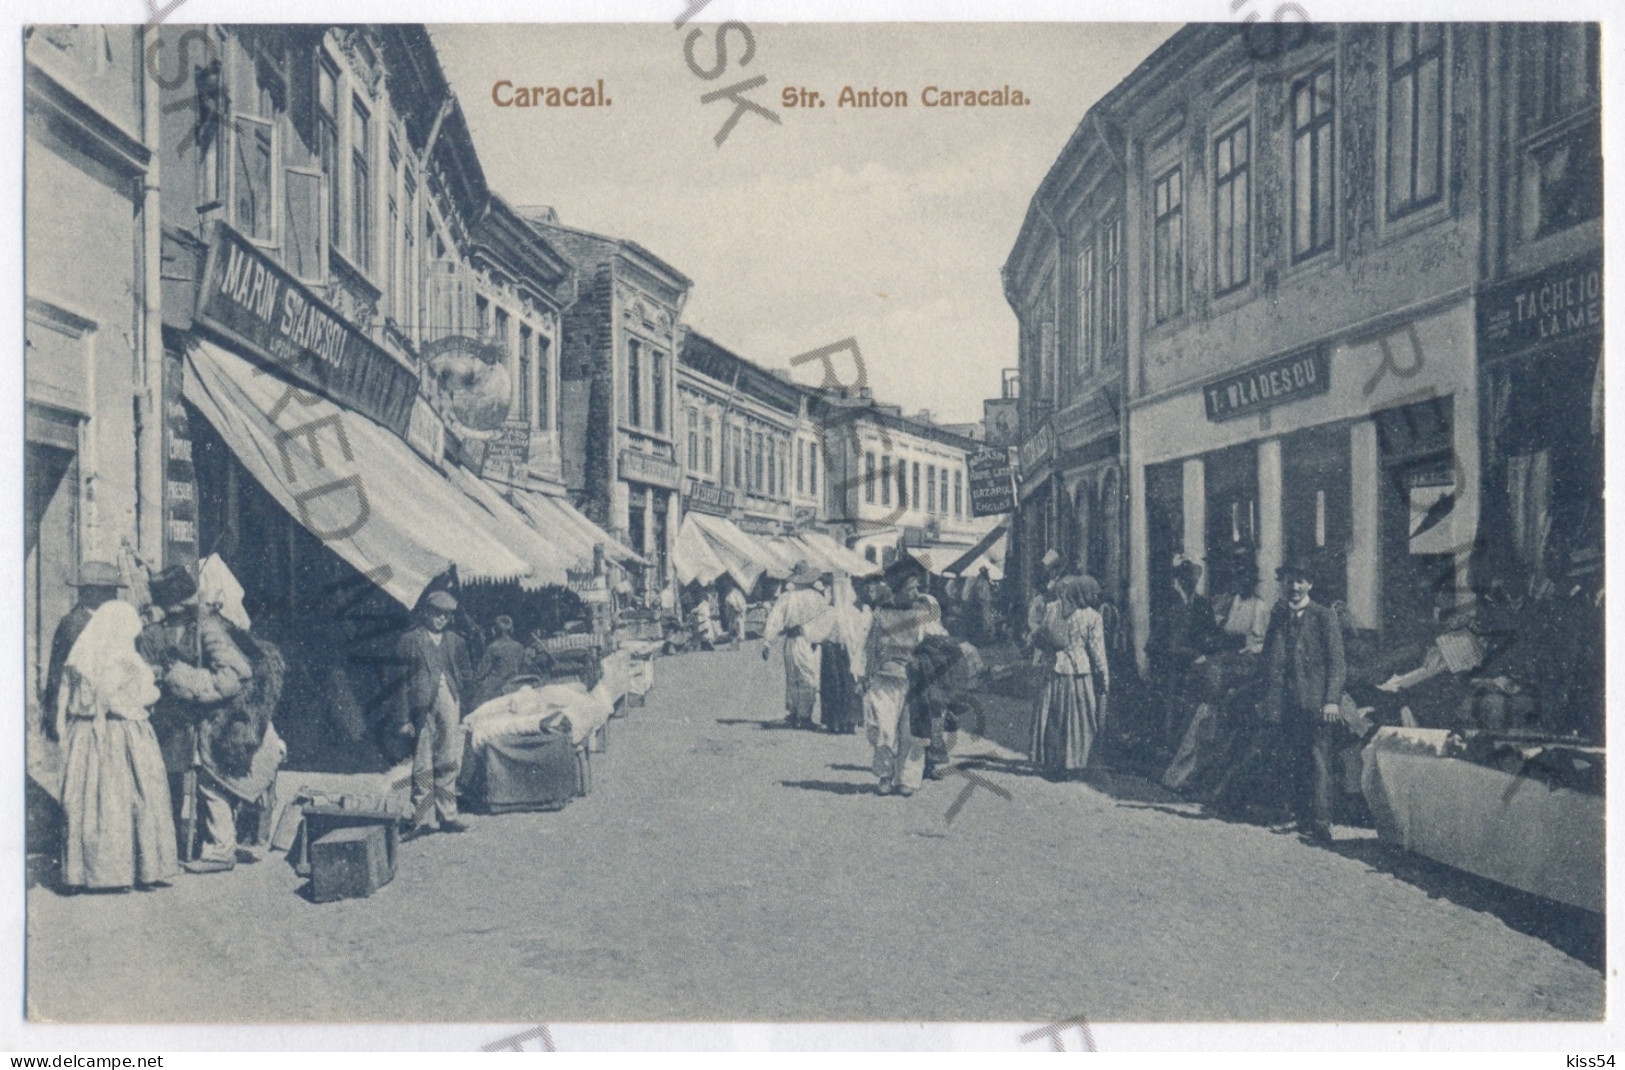 RO 87 - 11832 Olt, CARACAL - Old Postcard - Unused - Roumanie